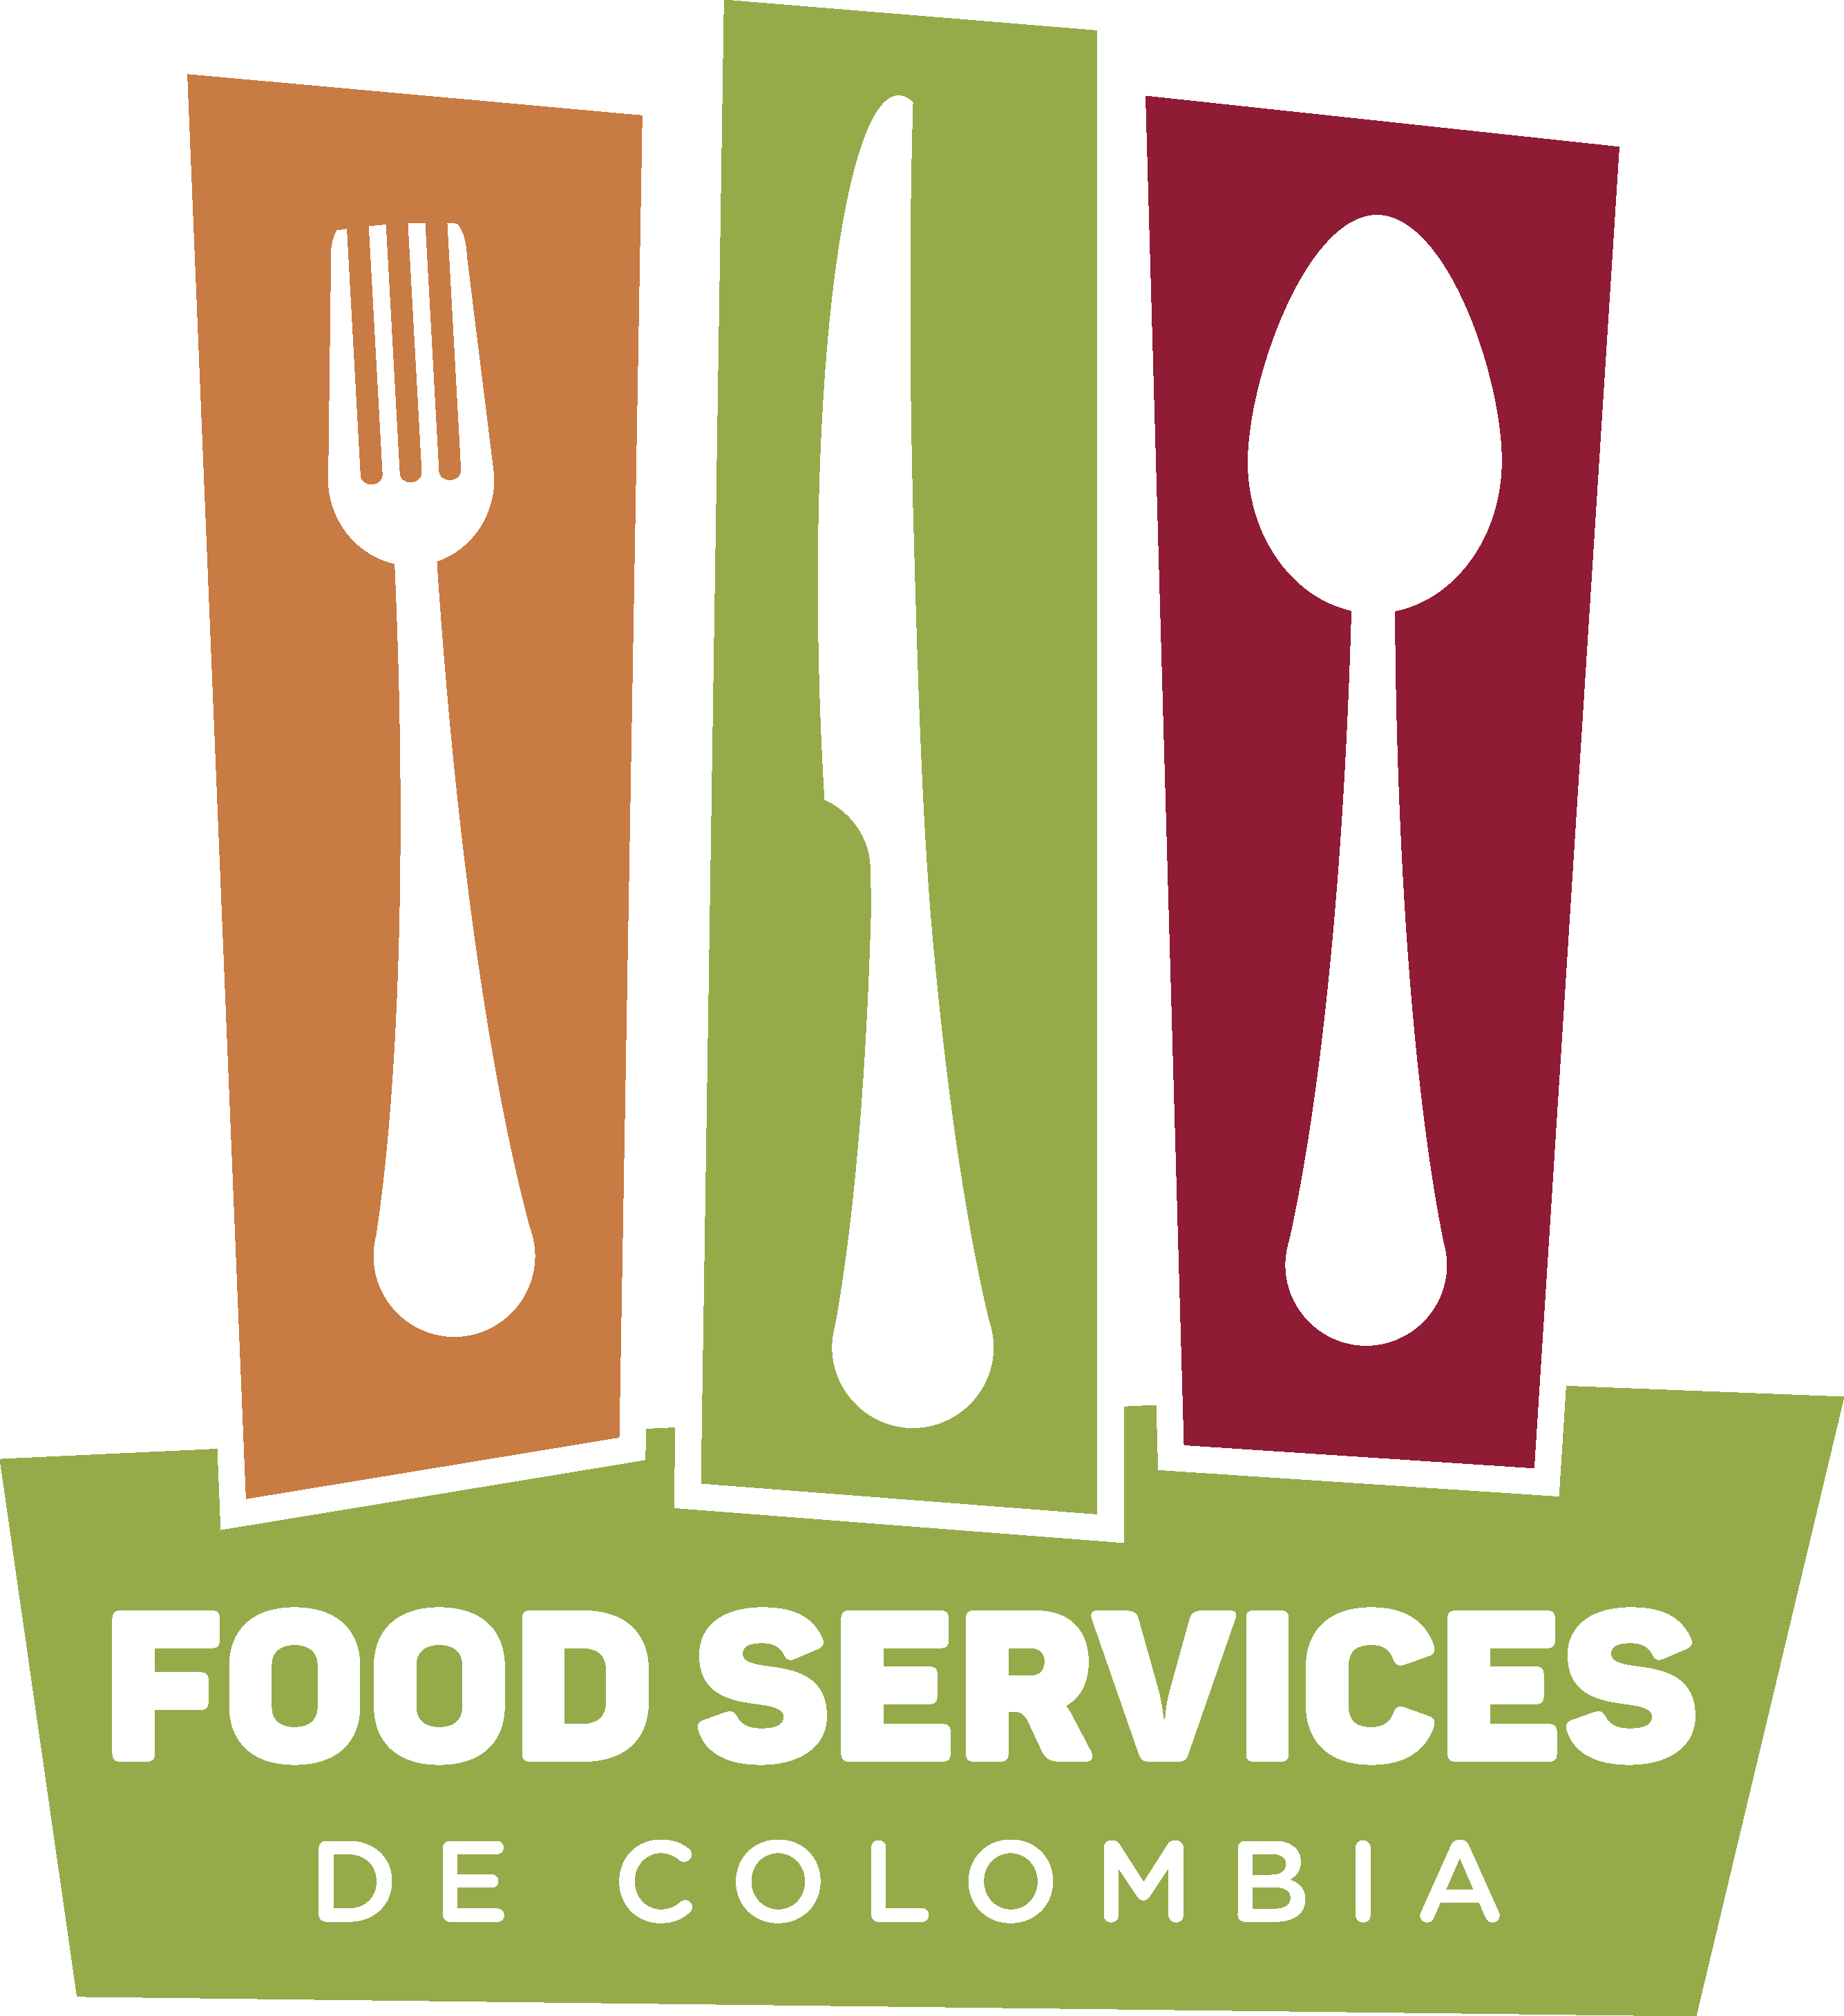 Food Services de Colombia